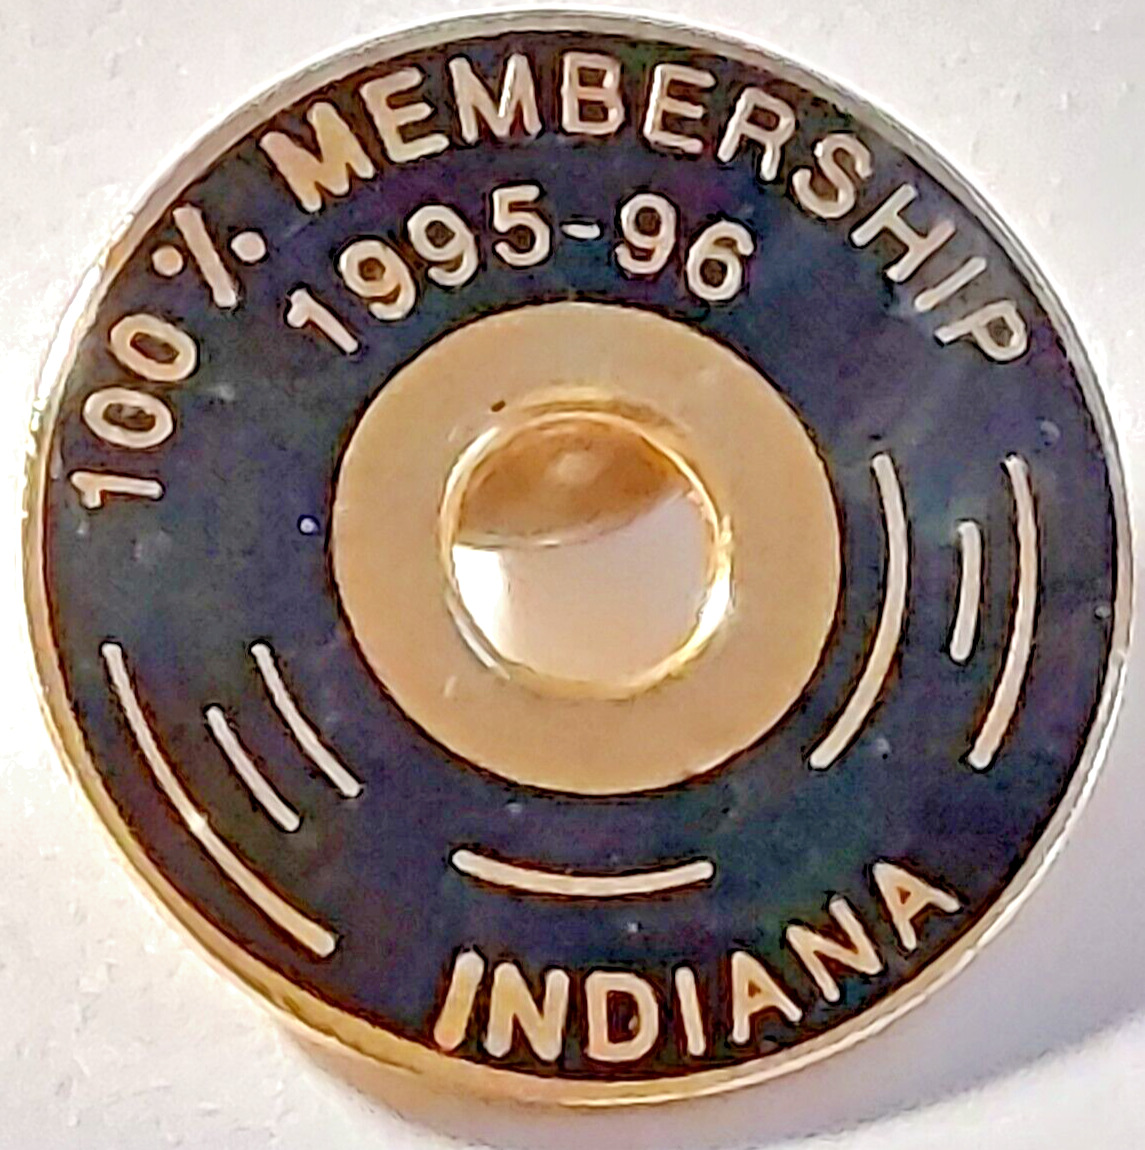 VFW 1995-1996 Indiana 100% Membership Lapel Pin (091523)